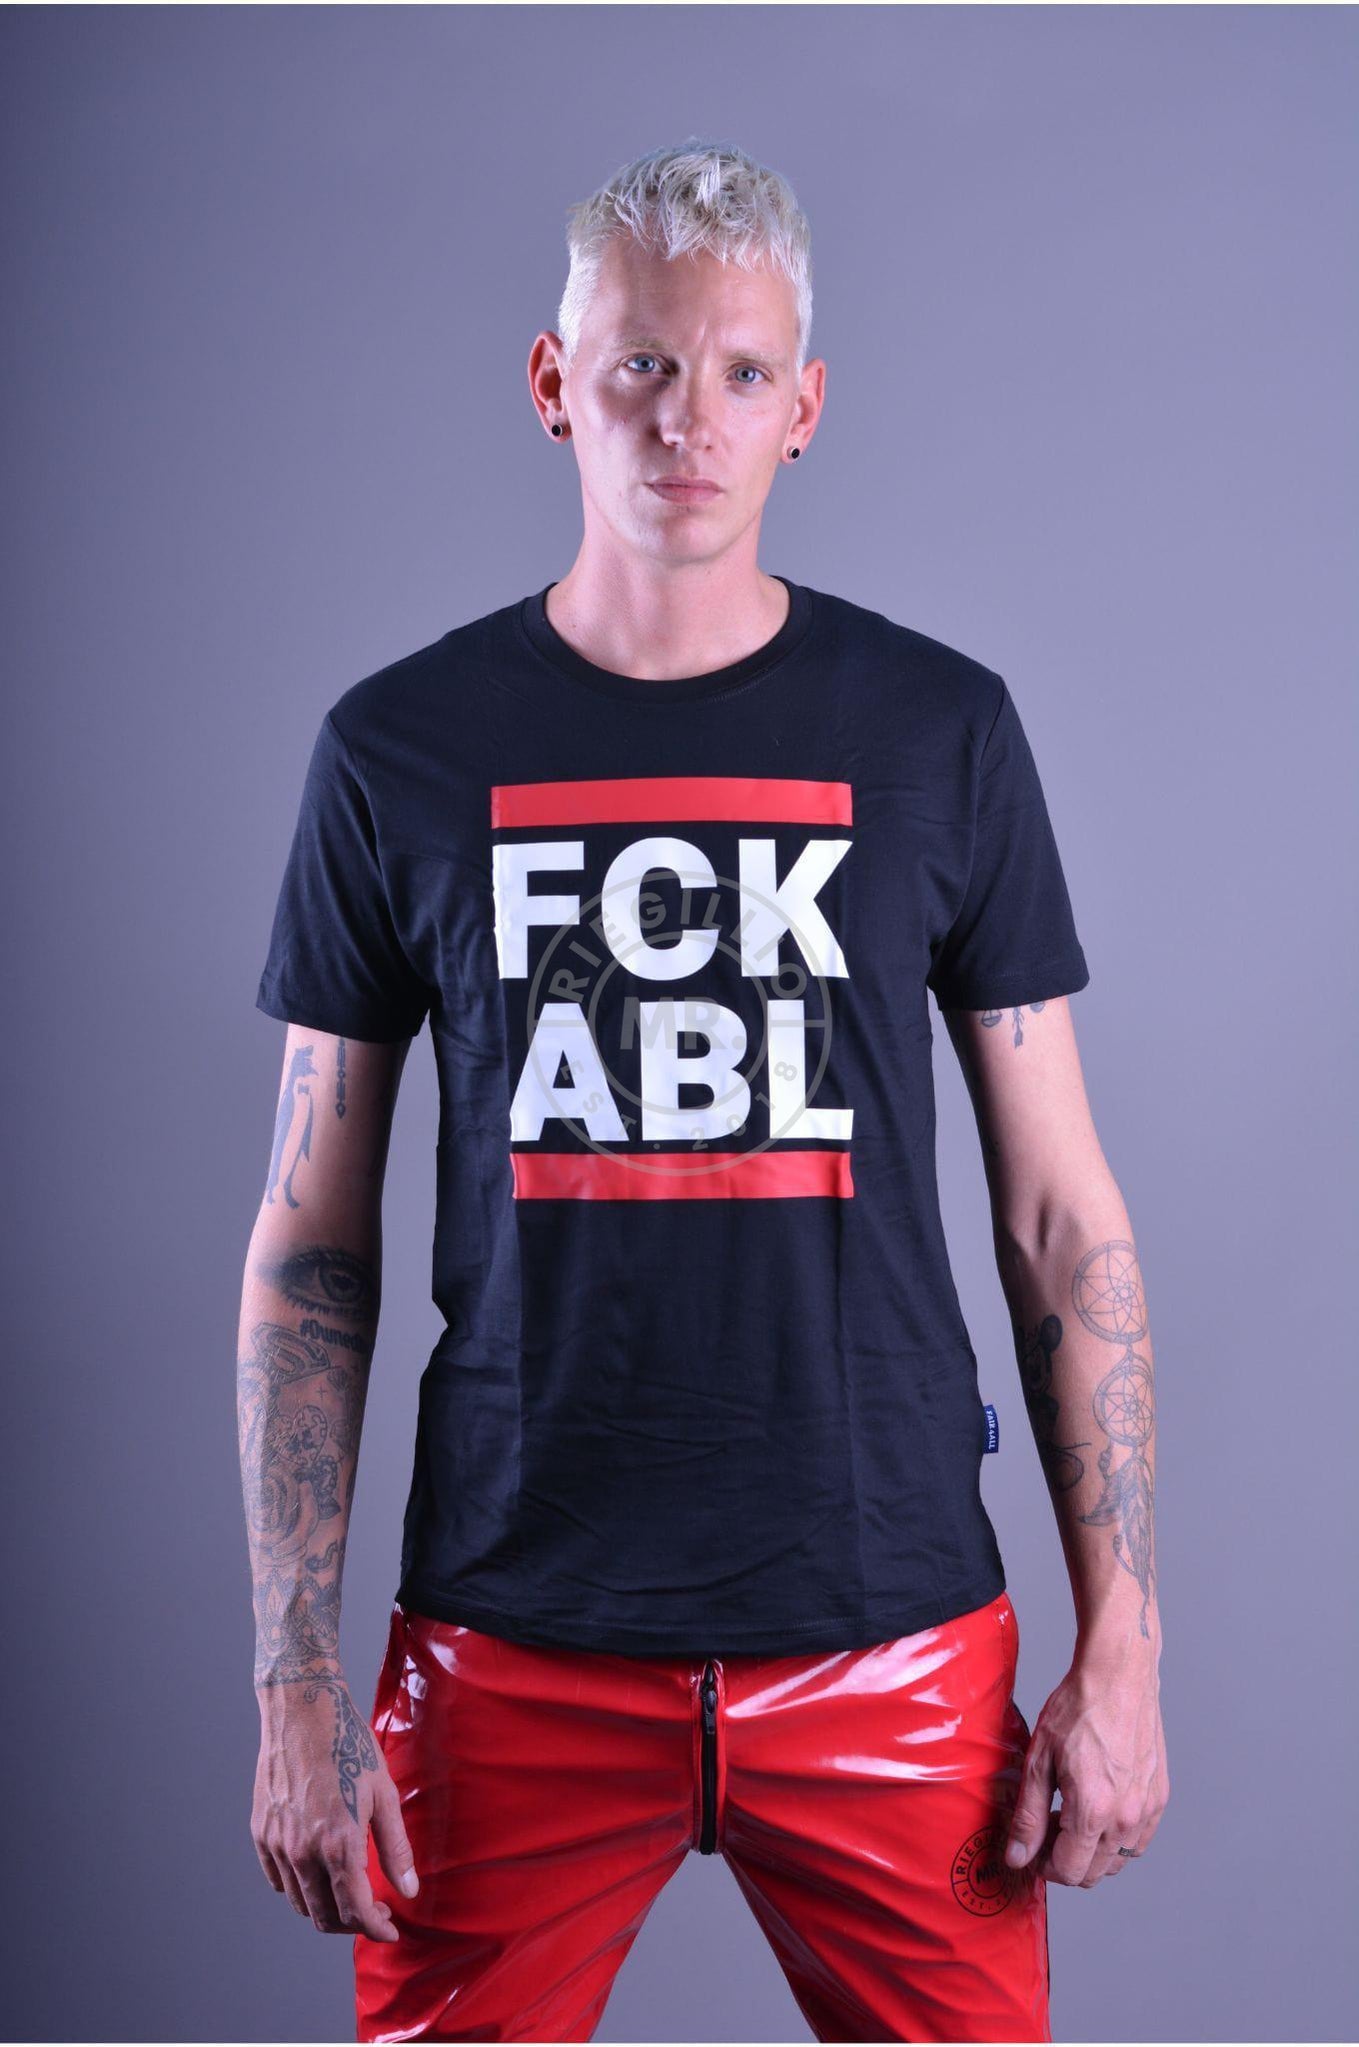 Sk8erboy FCK ABL T-Shirt at MR. Riegillio